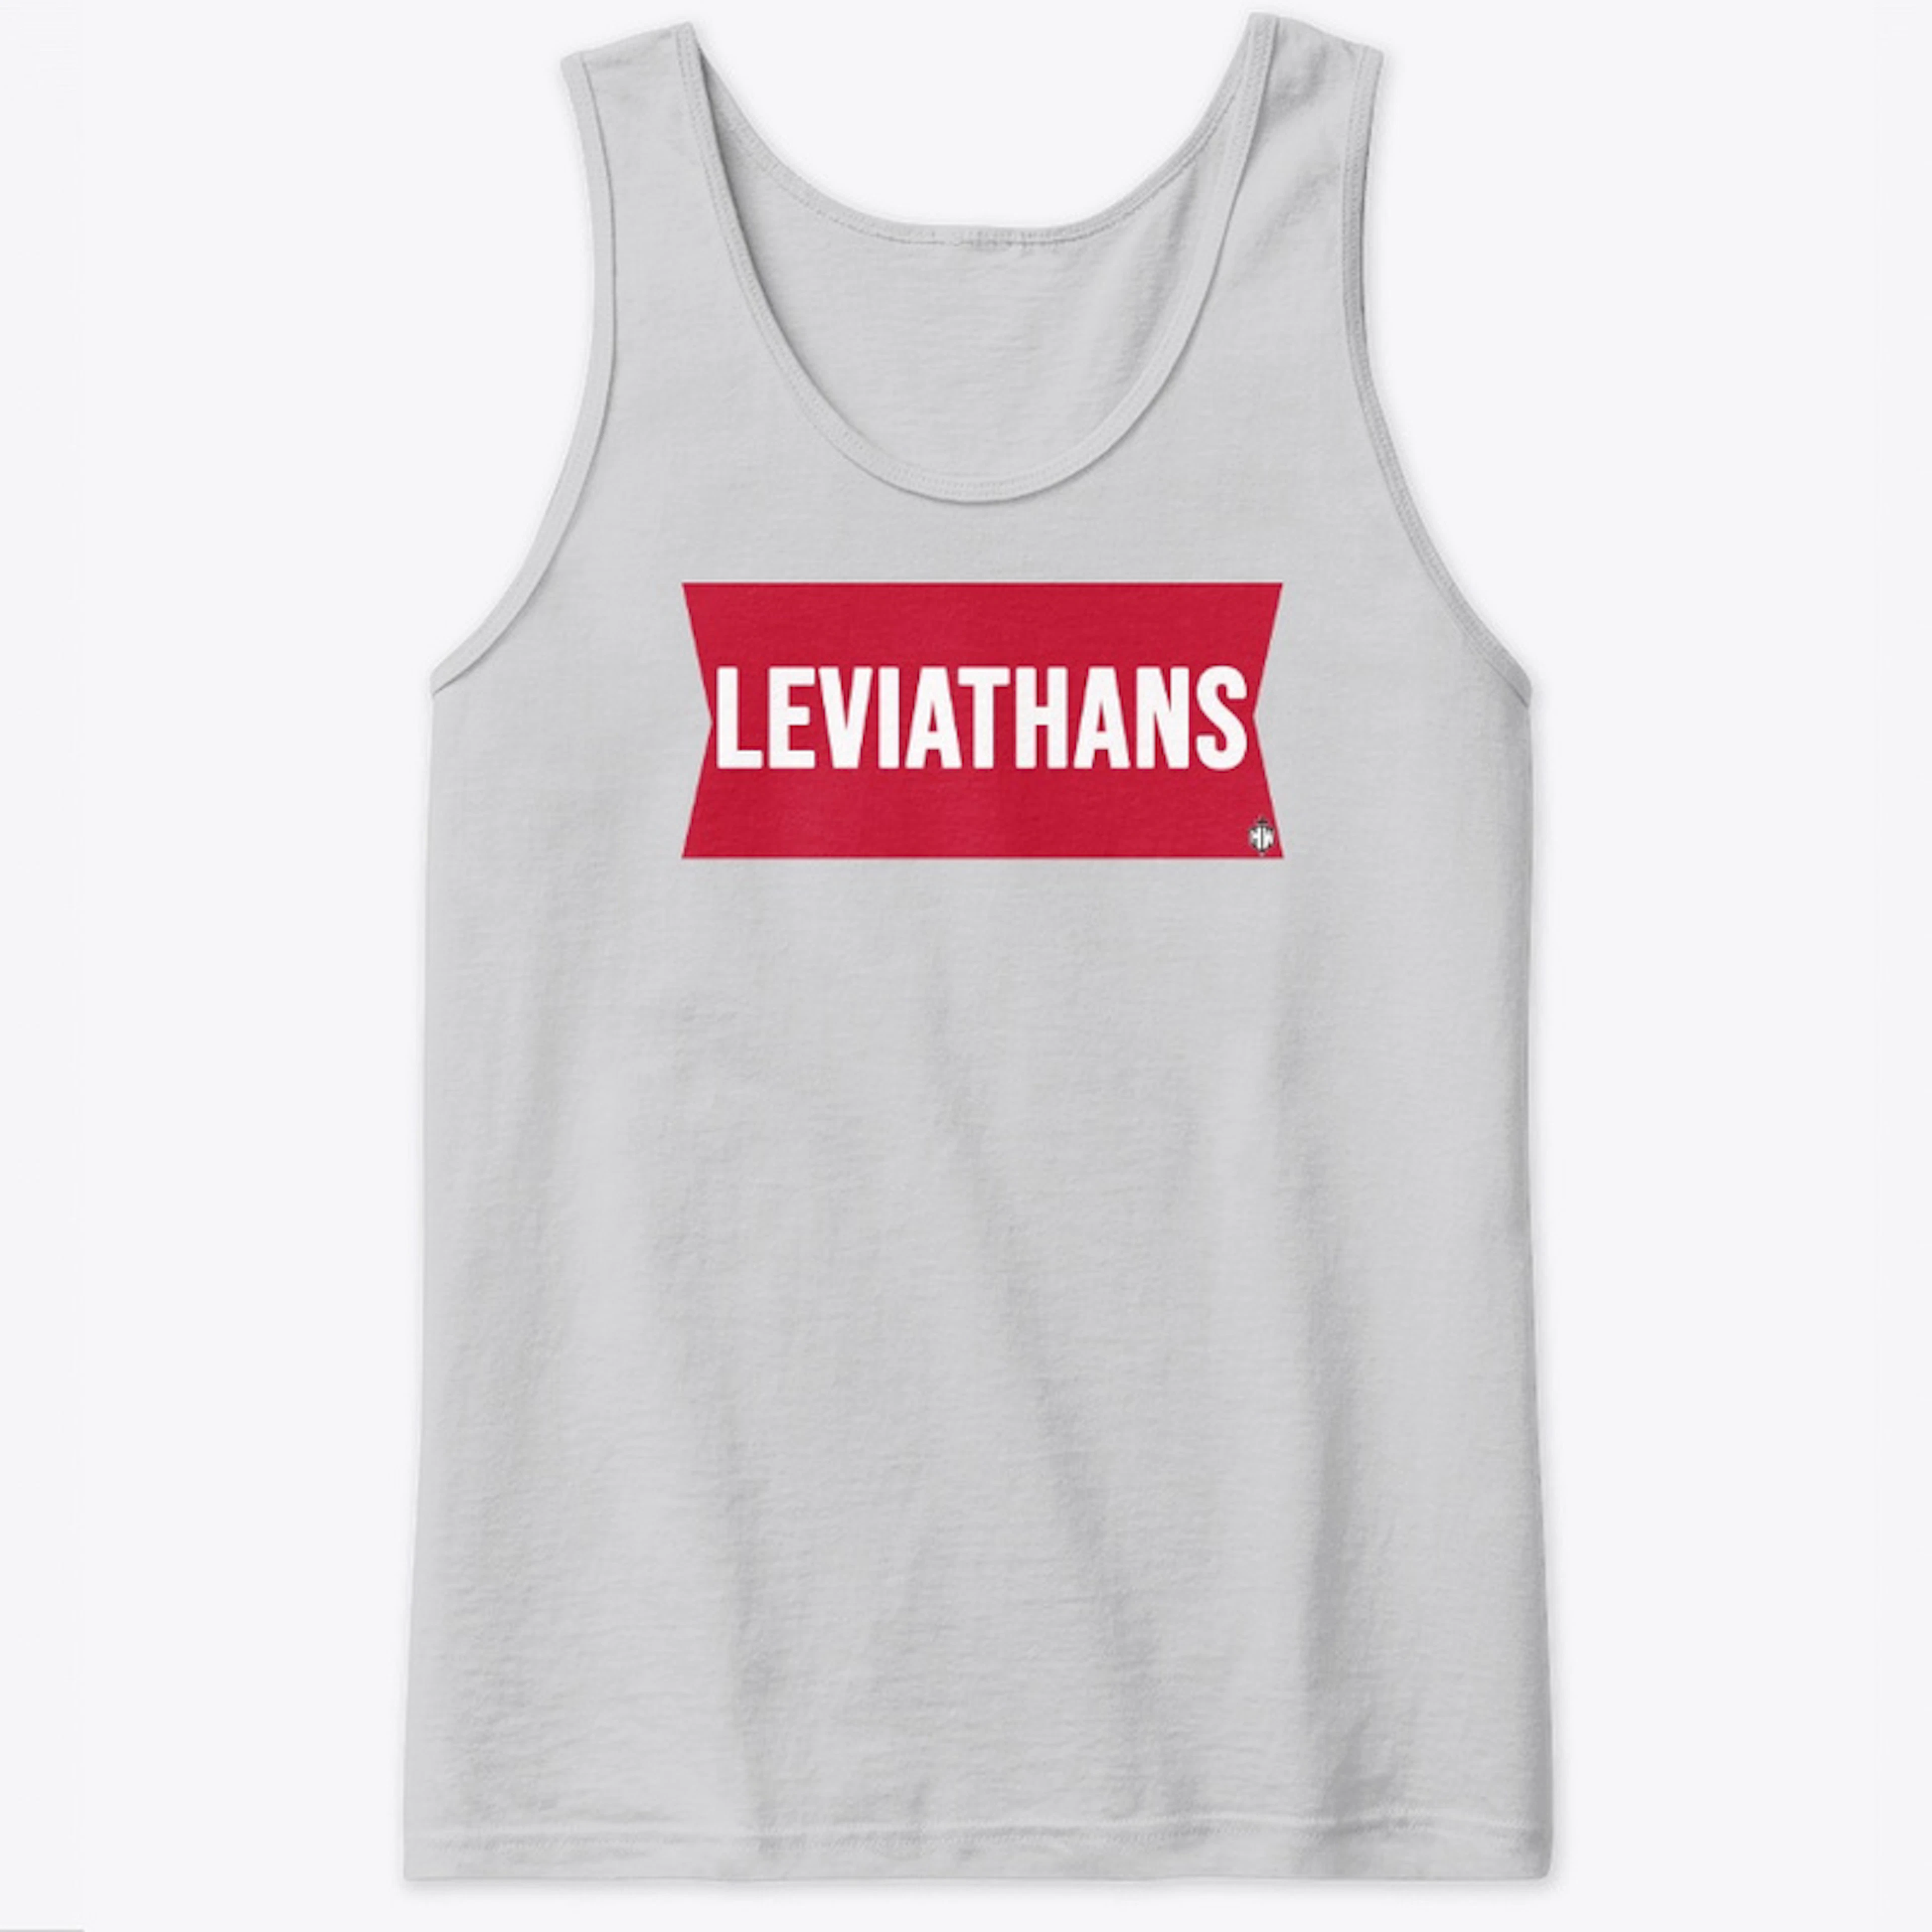 Leviathan's